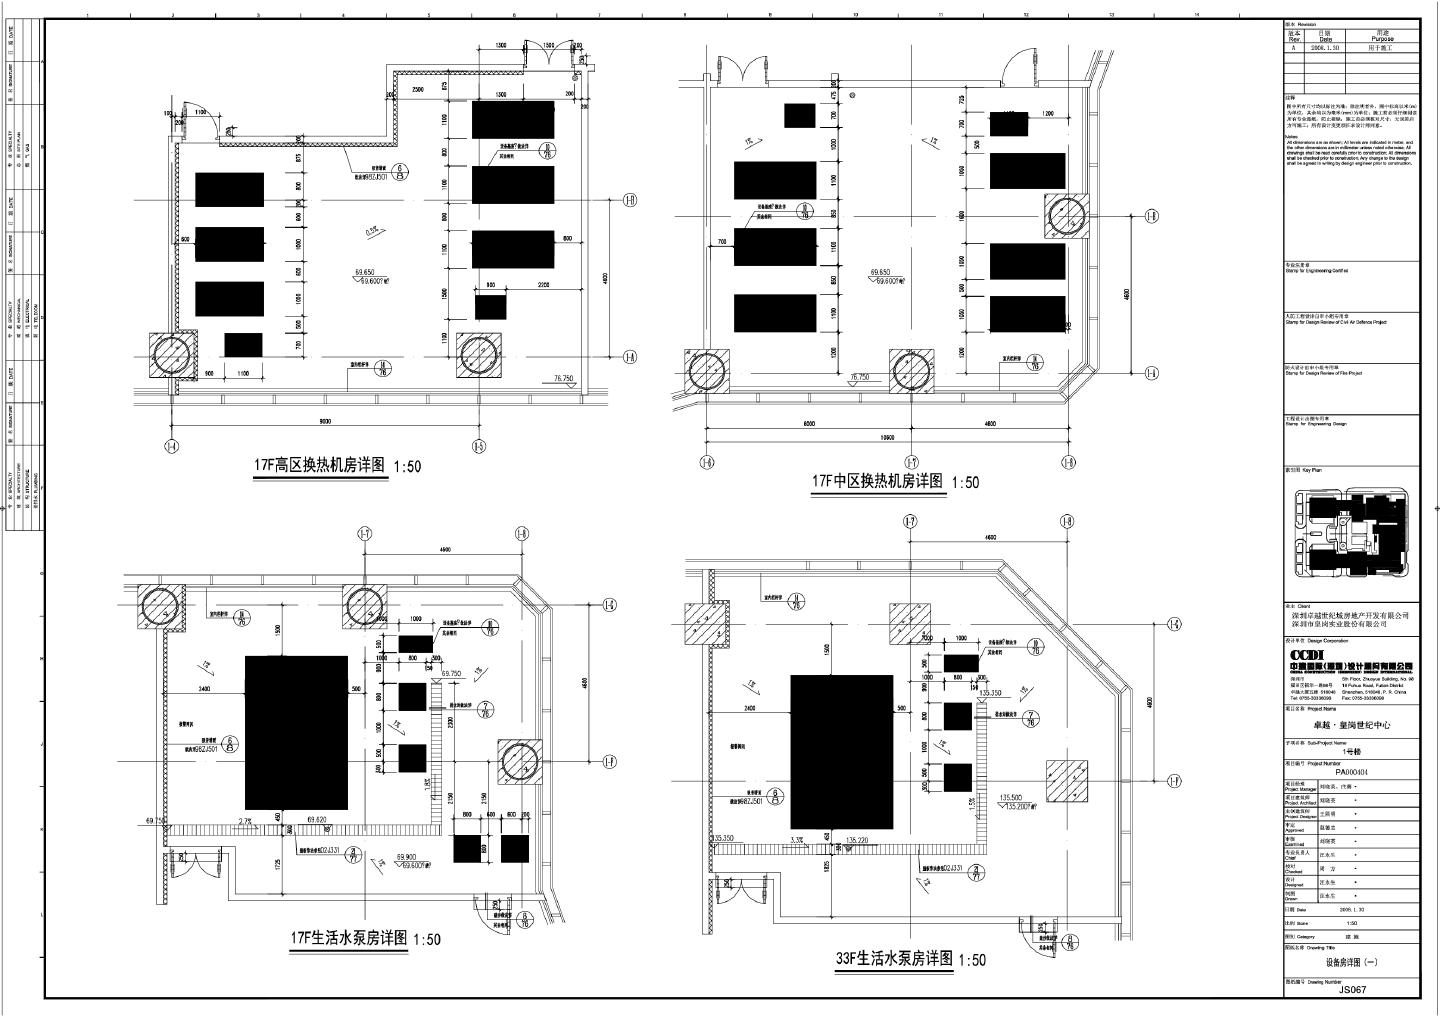 卓越·皇岗世纪中心1号楼建施067设备房详图CAD图.dwg